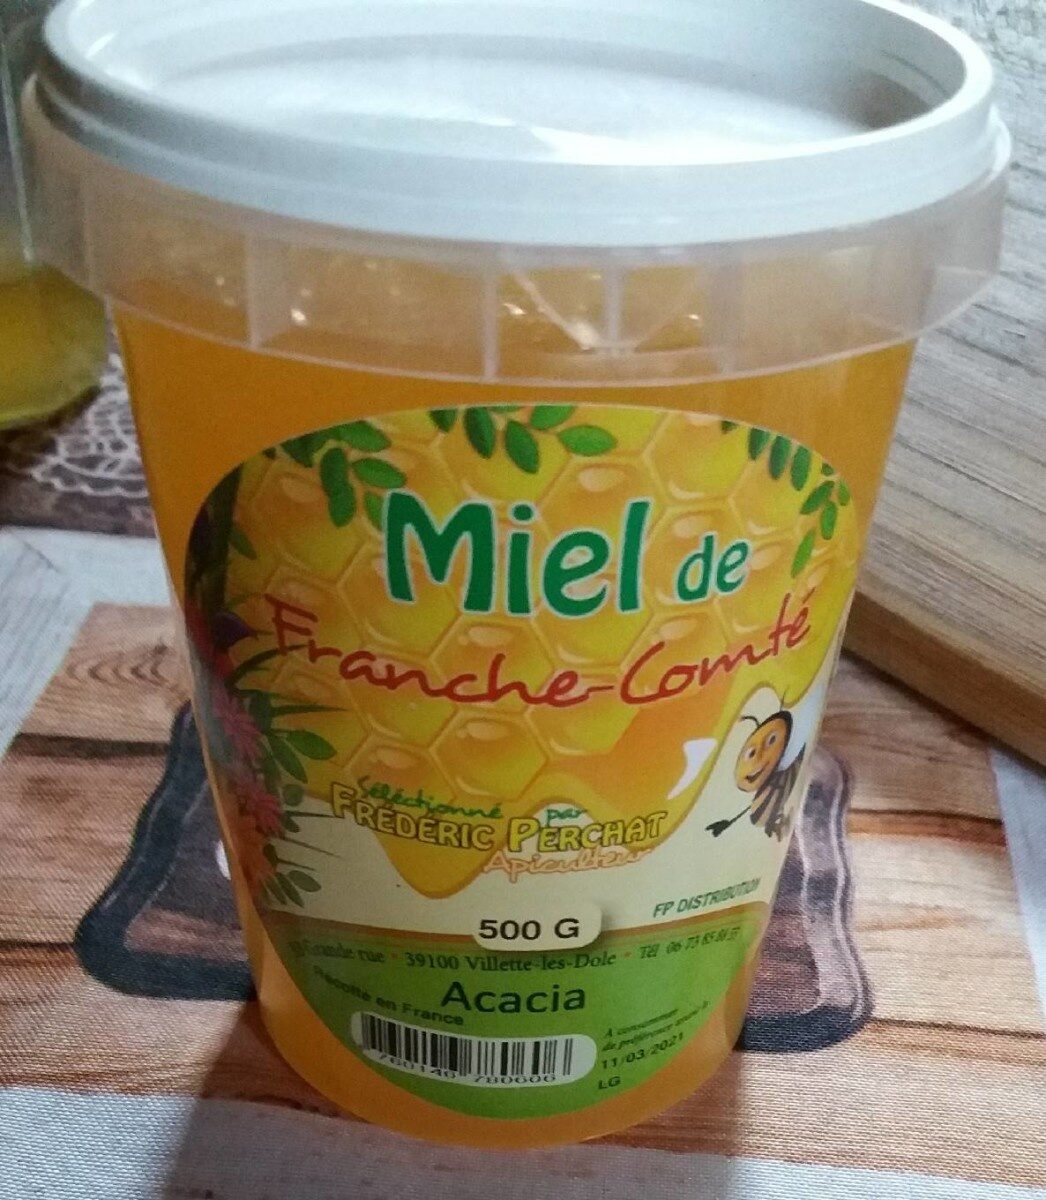 Miel de Franche Comté - Product - fr